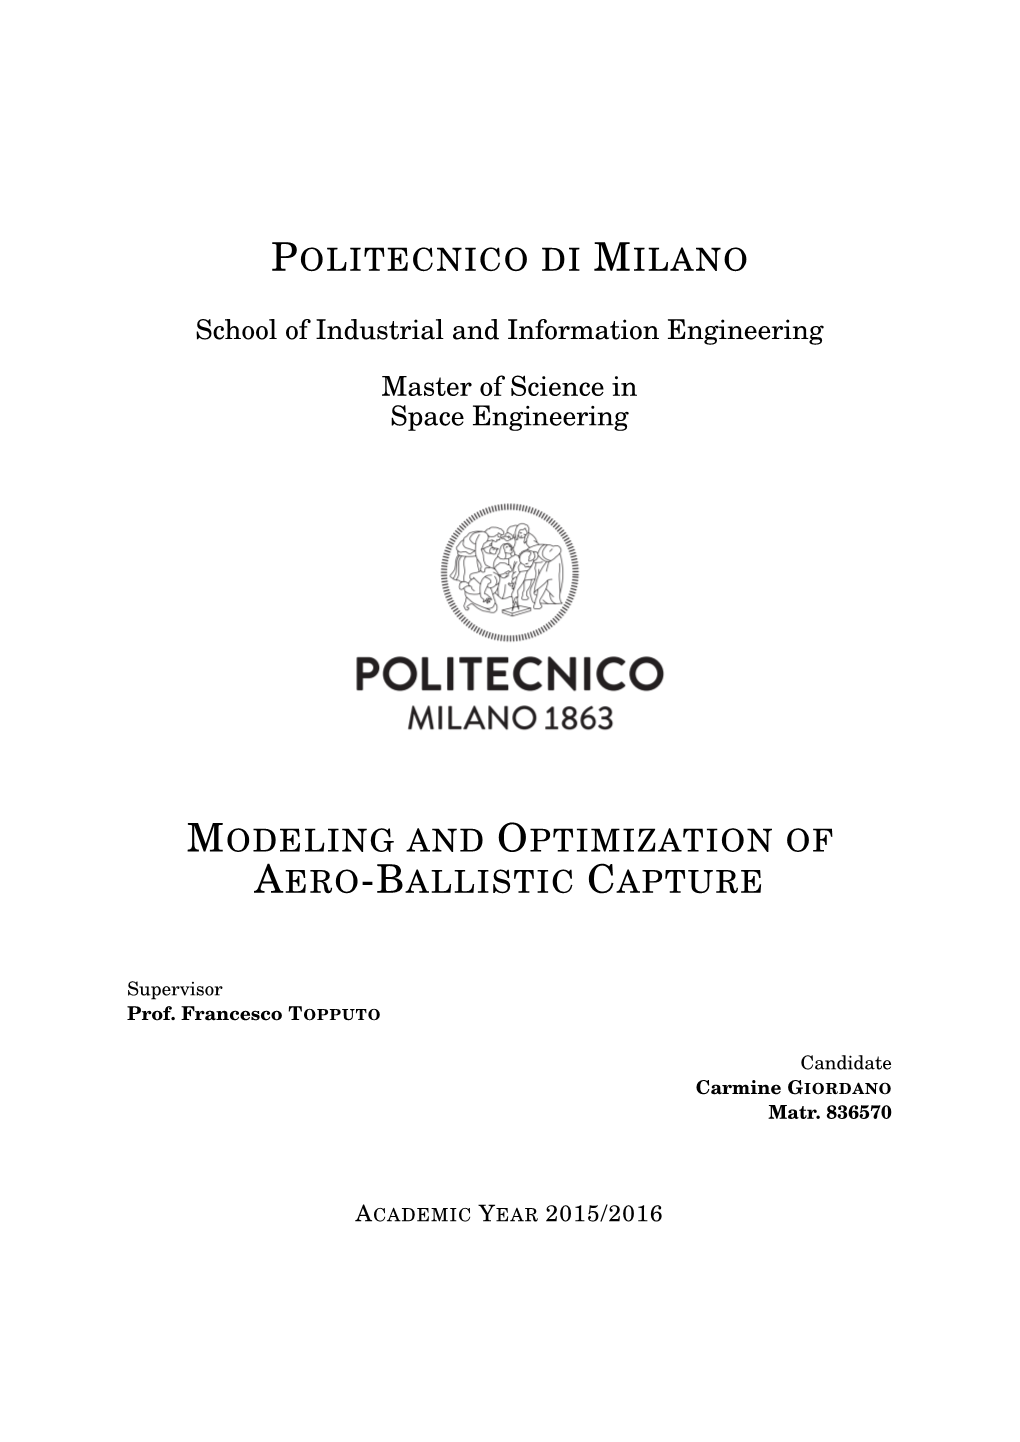 Politecnico Di Milano Modeling and Optimization of Aero-Ballistic Capture